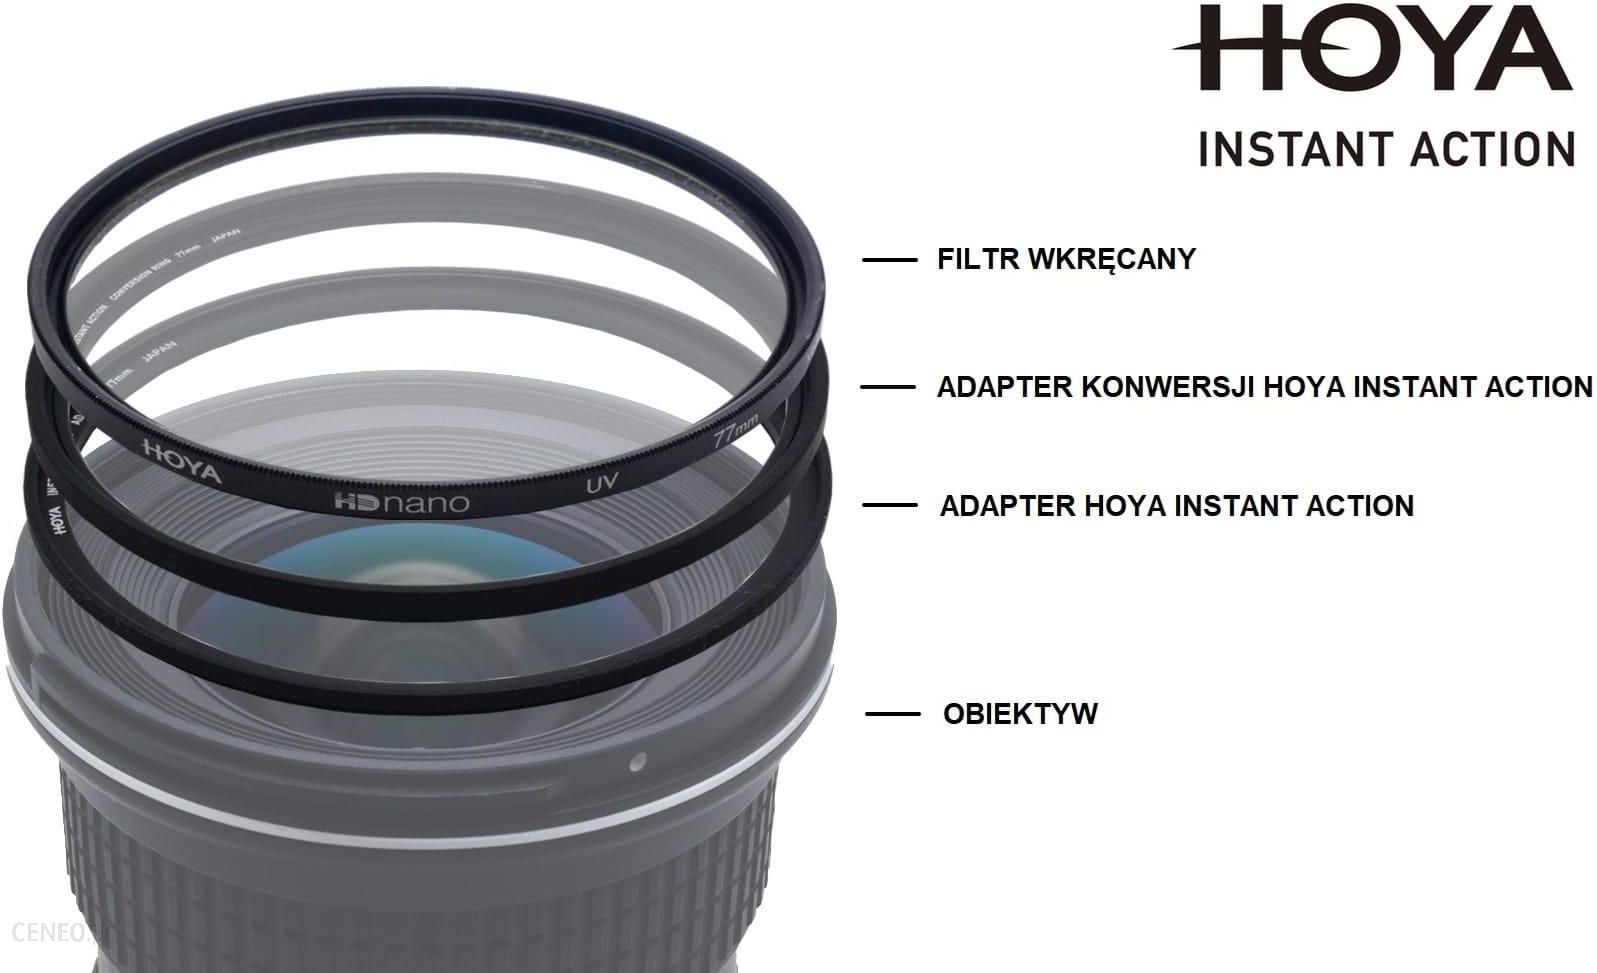 Hoya Adapter konwersji Instant Action 62 mm